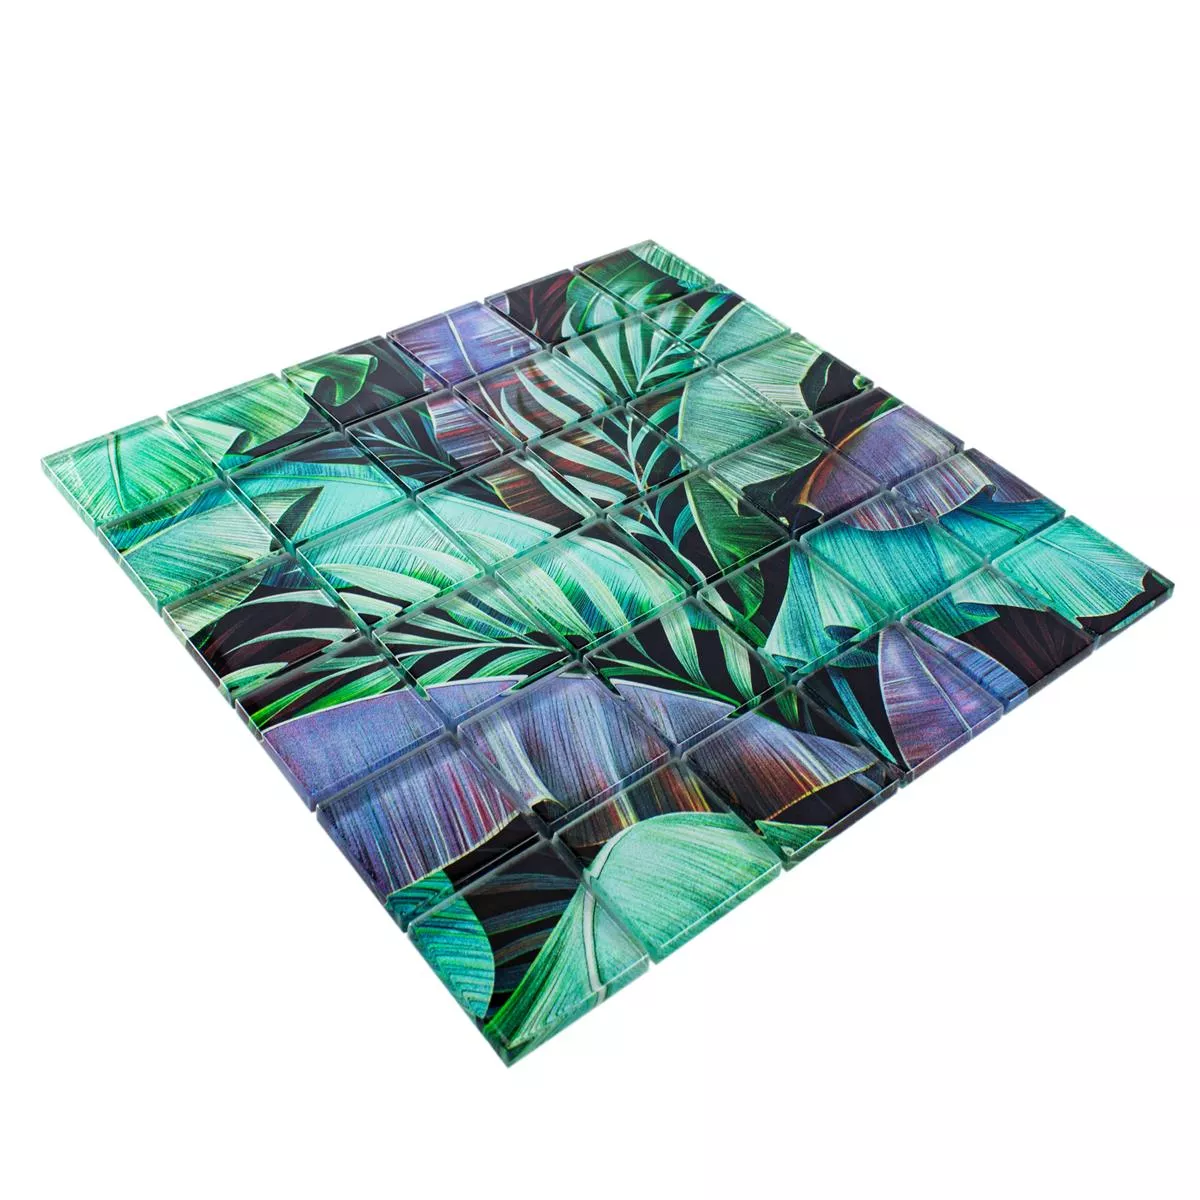 Muestra Mosaico de Cristal Azulejos Pittsburg Flor Óptica Verde Púrpura